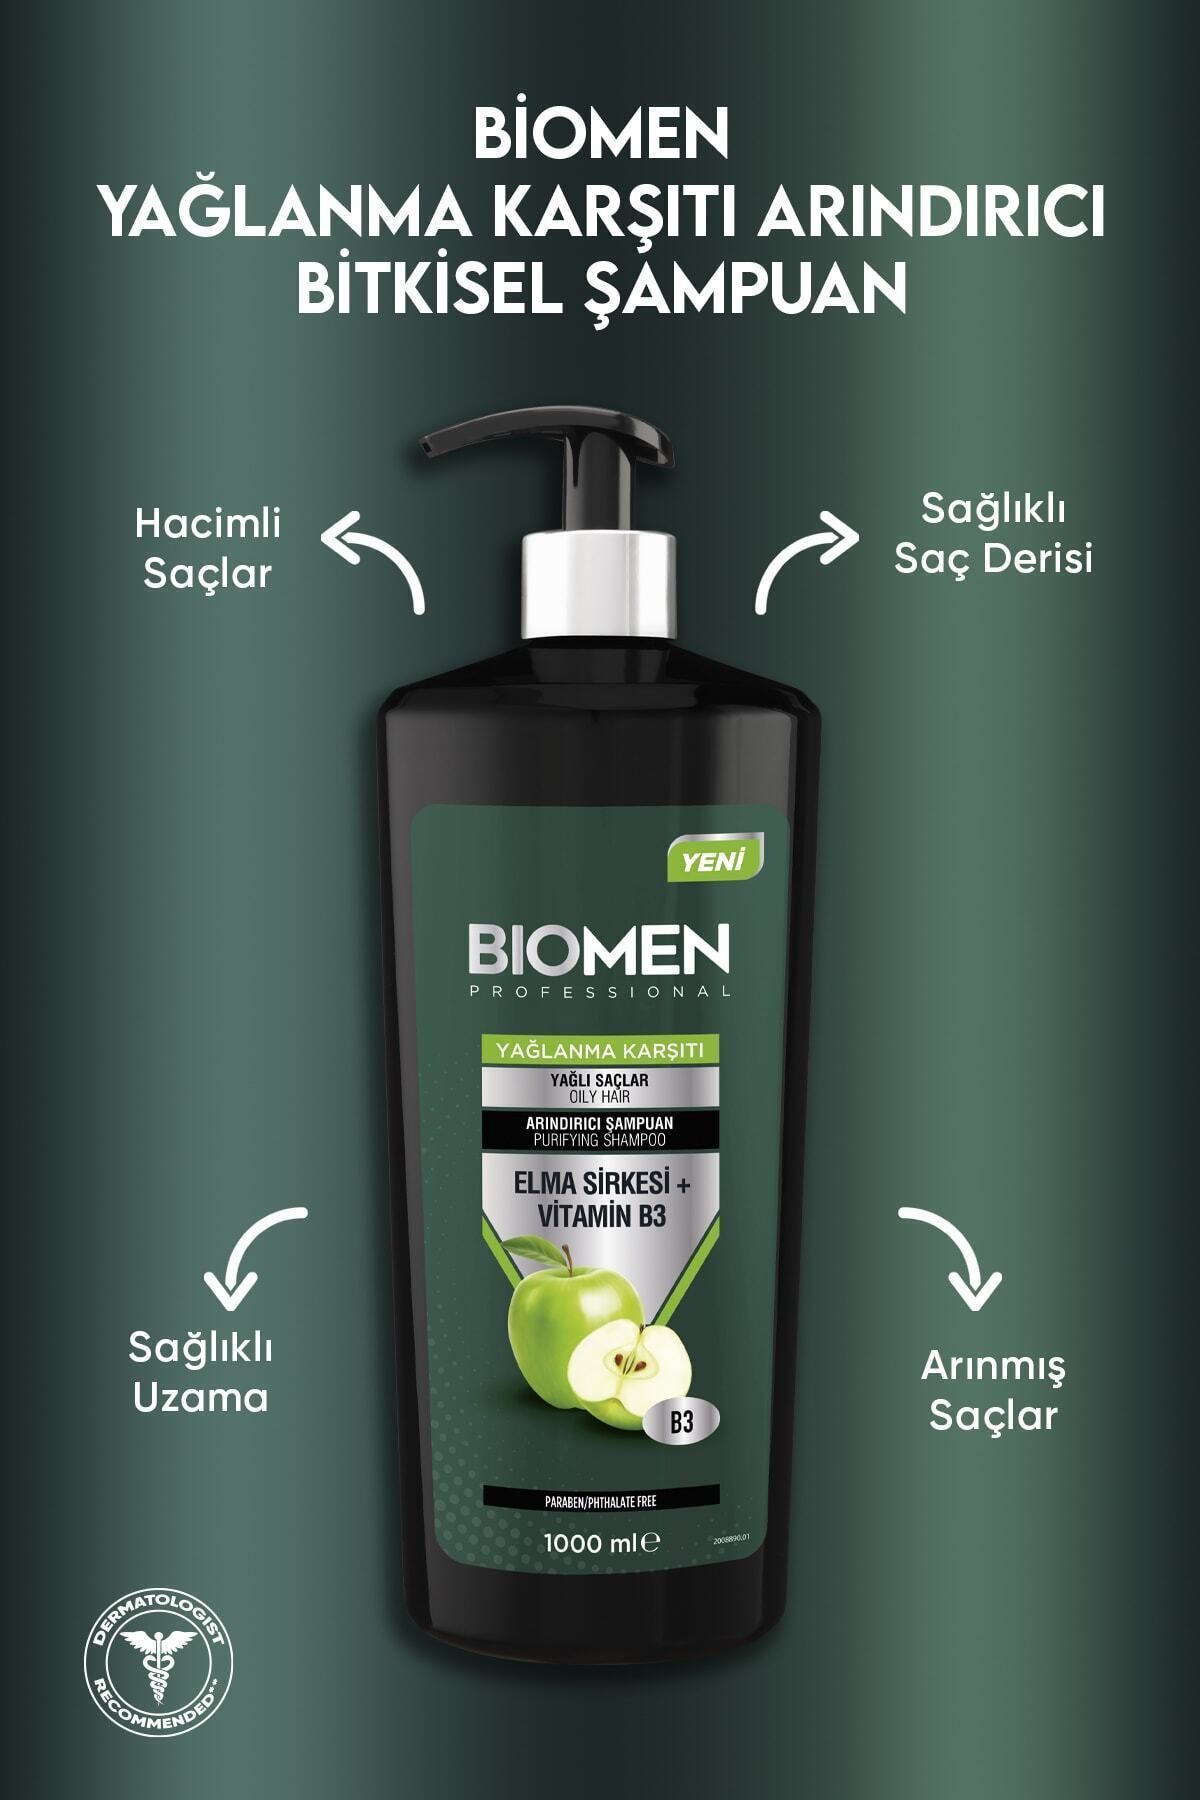 Biomen Yağlı Saçlara Özel Elma Sirkesi ve Vitamin B3 İçeren Etkili Yağlanma Karşıtı Şampuan